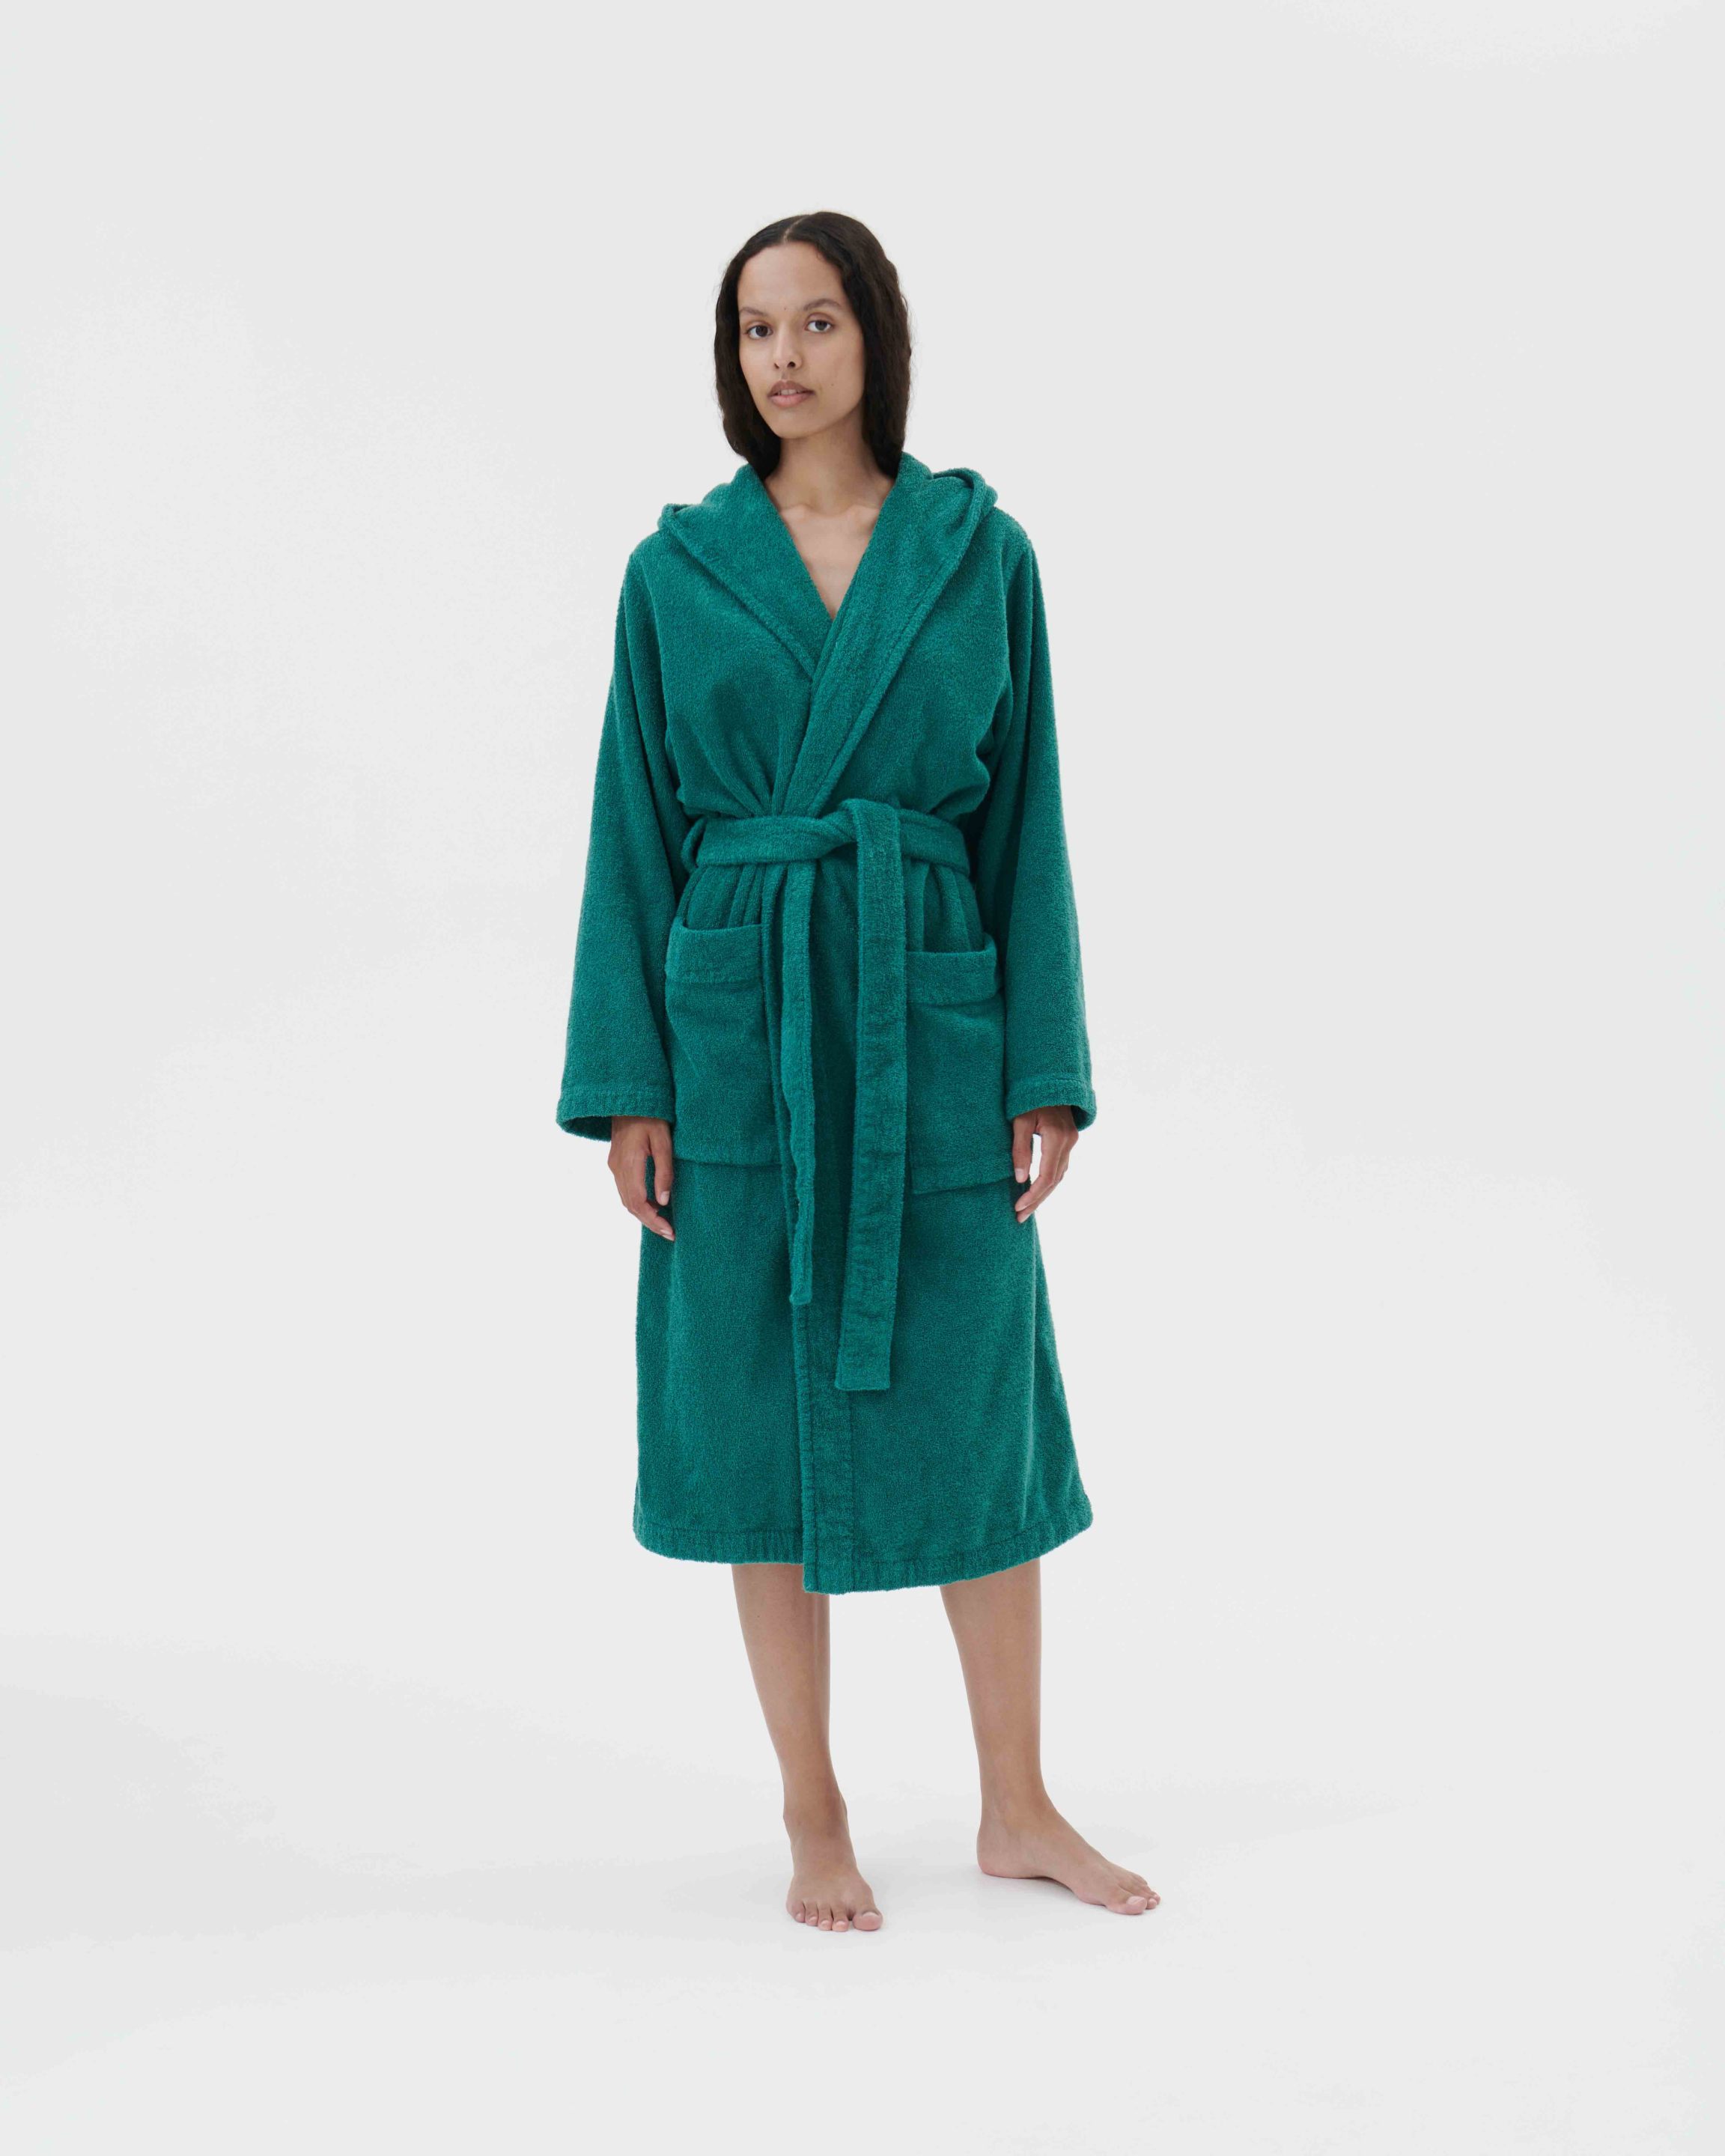 Female - Hooded Bathrobe - Teal Green